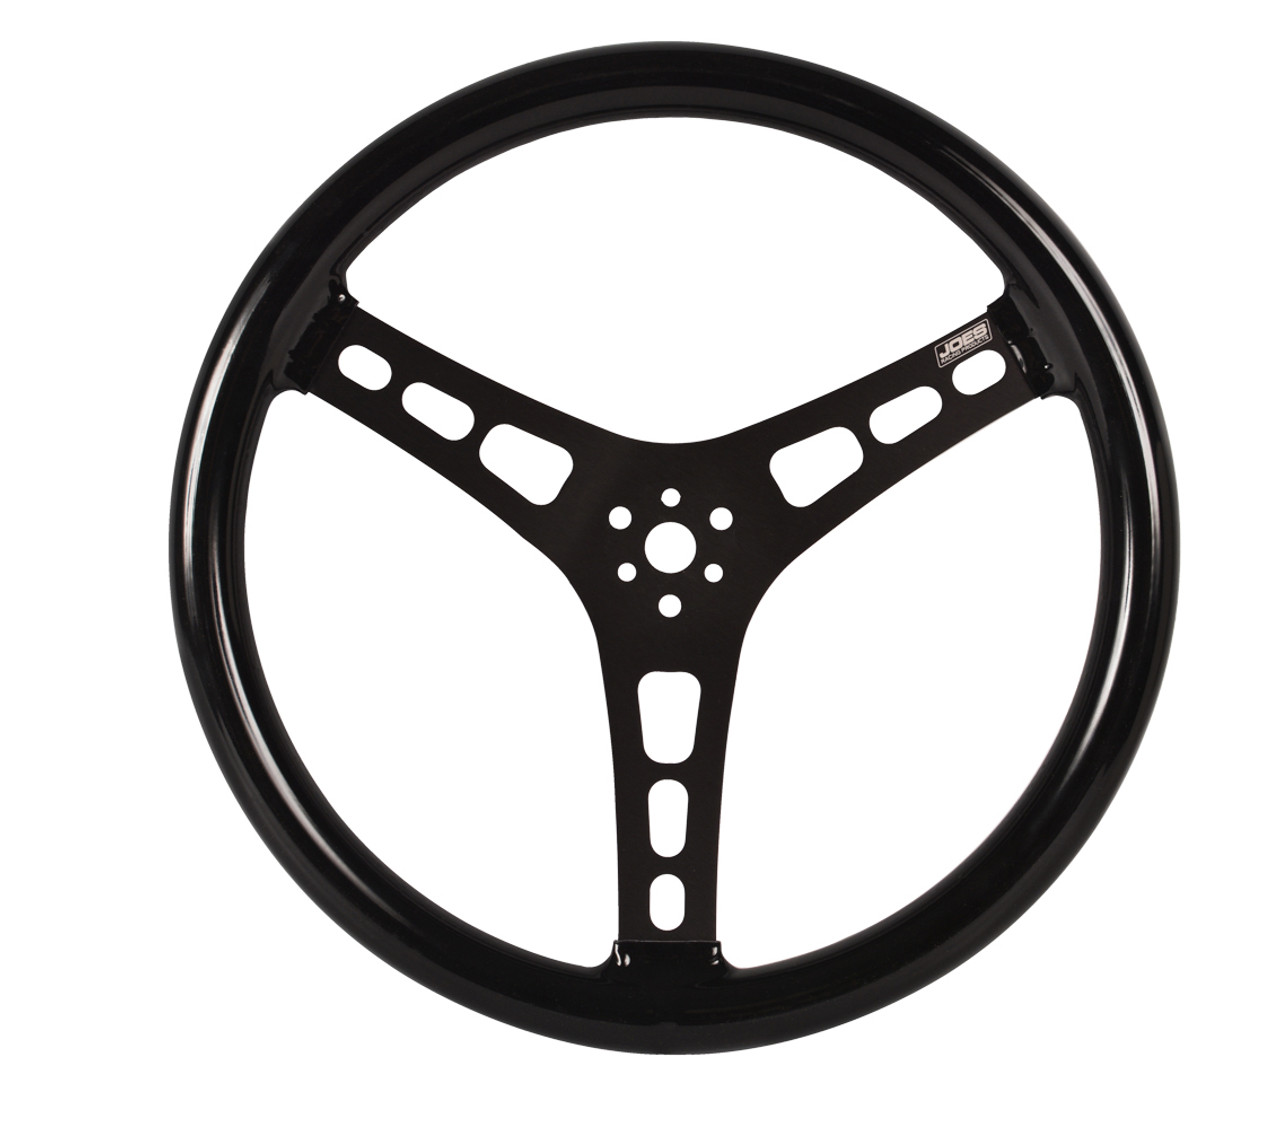 Joes Steering Wheel 13in Alum Dished Rubber Coated - JOE13513-CB